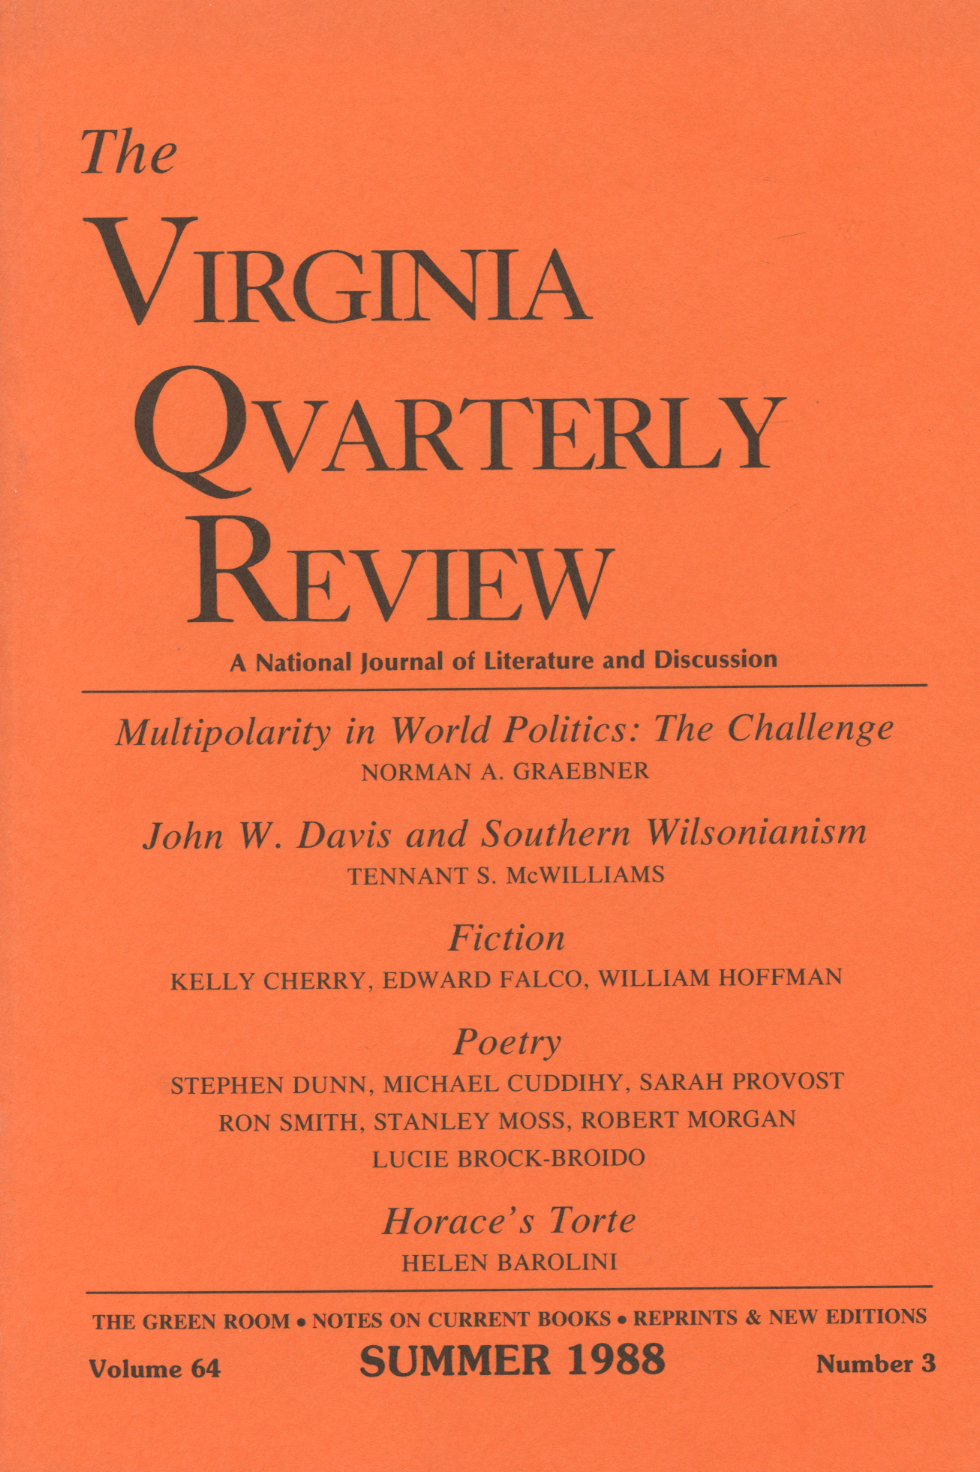 Virginia Quarterly Review, Summer 1988 cover